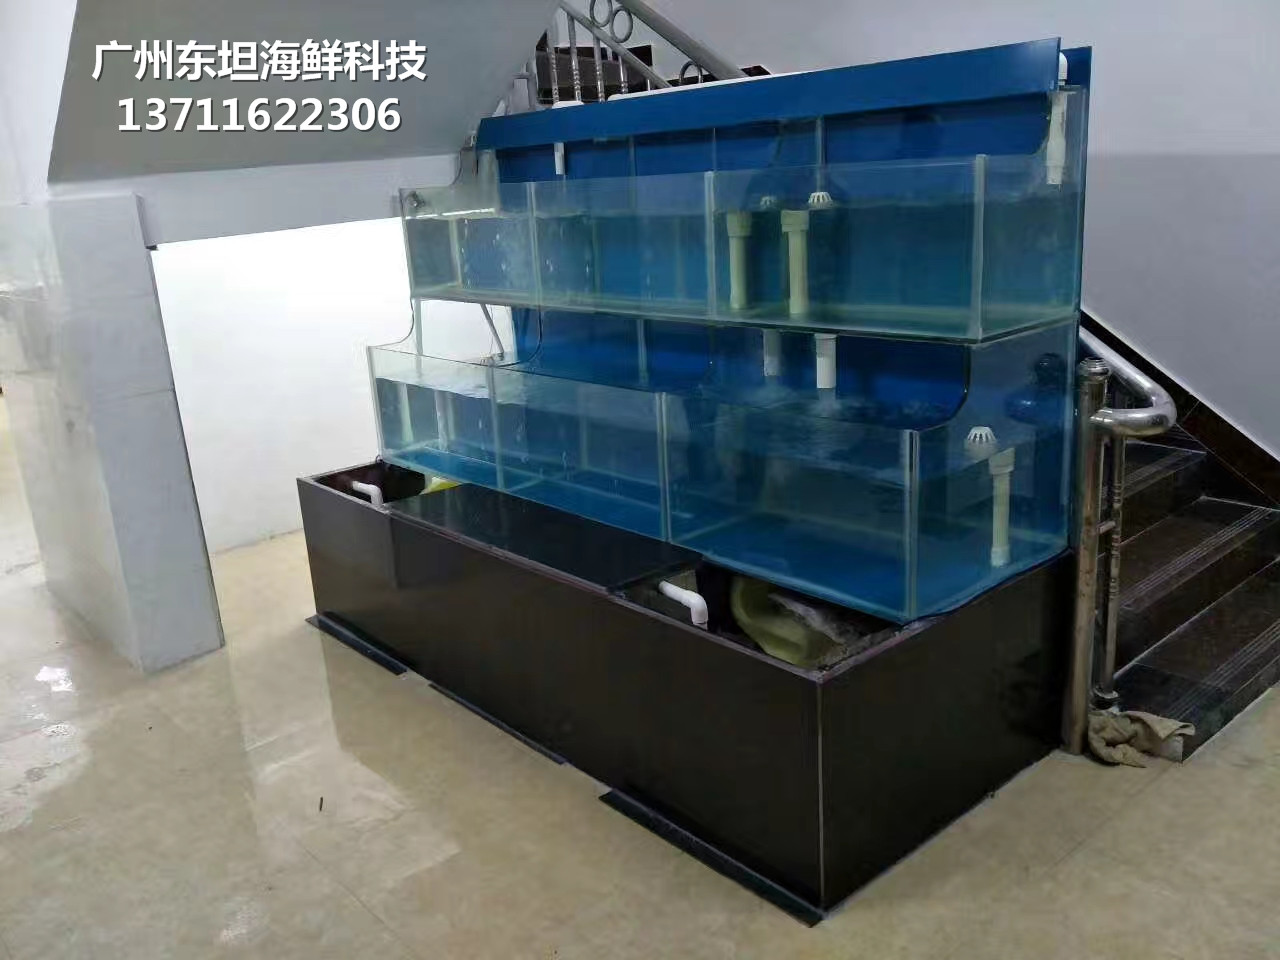 广州从化哪里订做水产店制冷鱼池